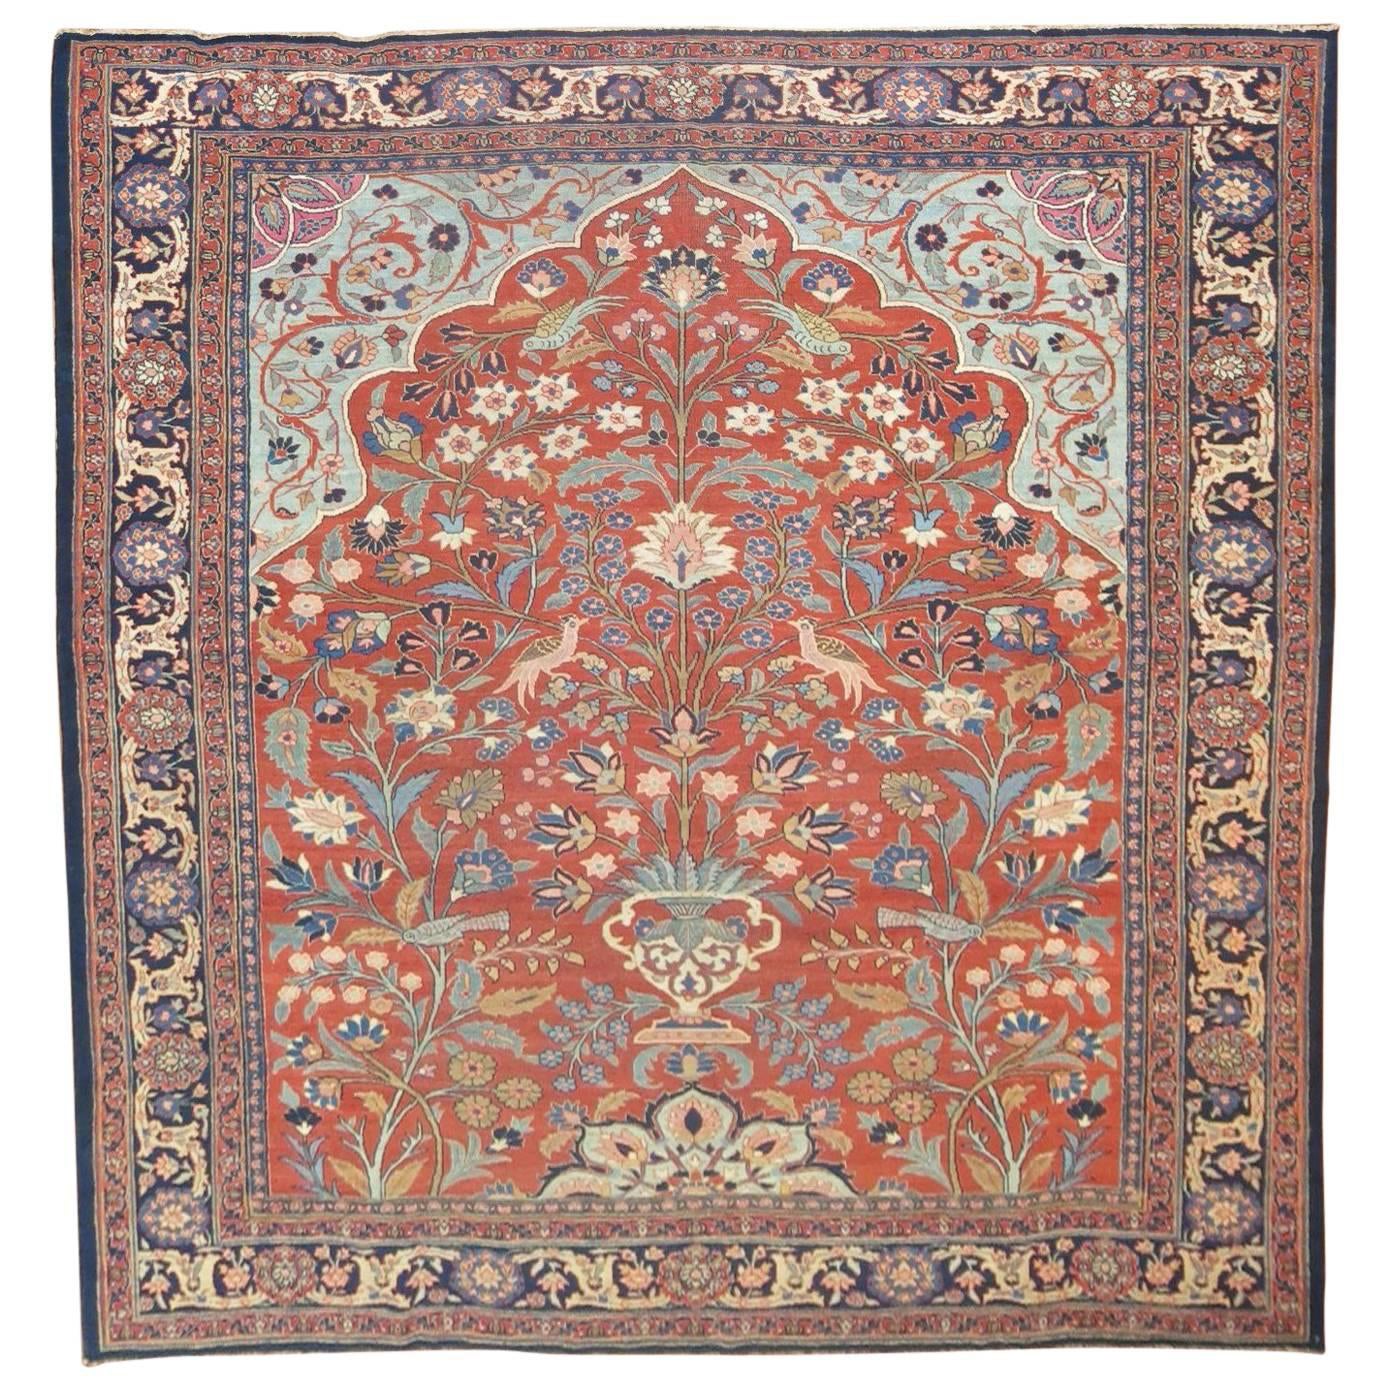 Pictorial Antique Persian Tabriz Carpet